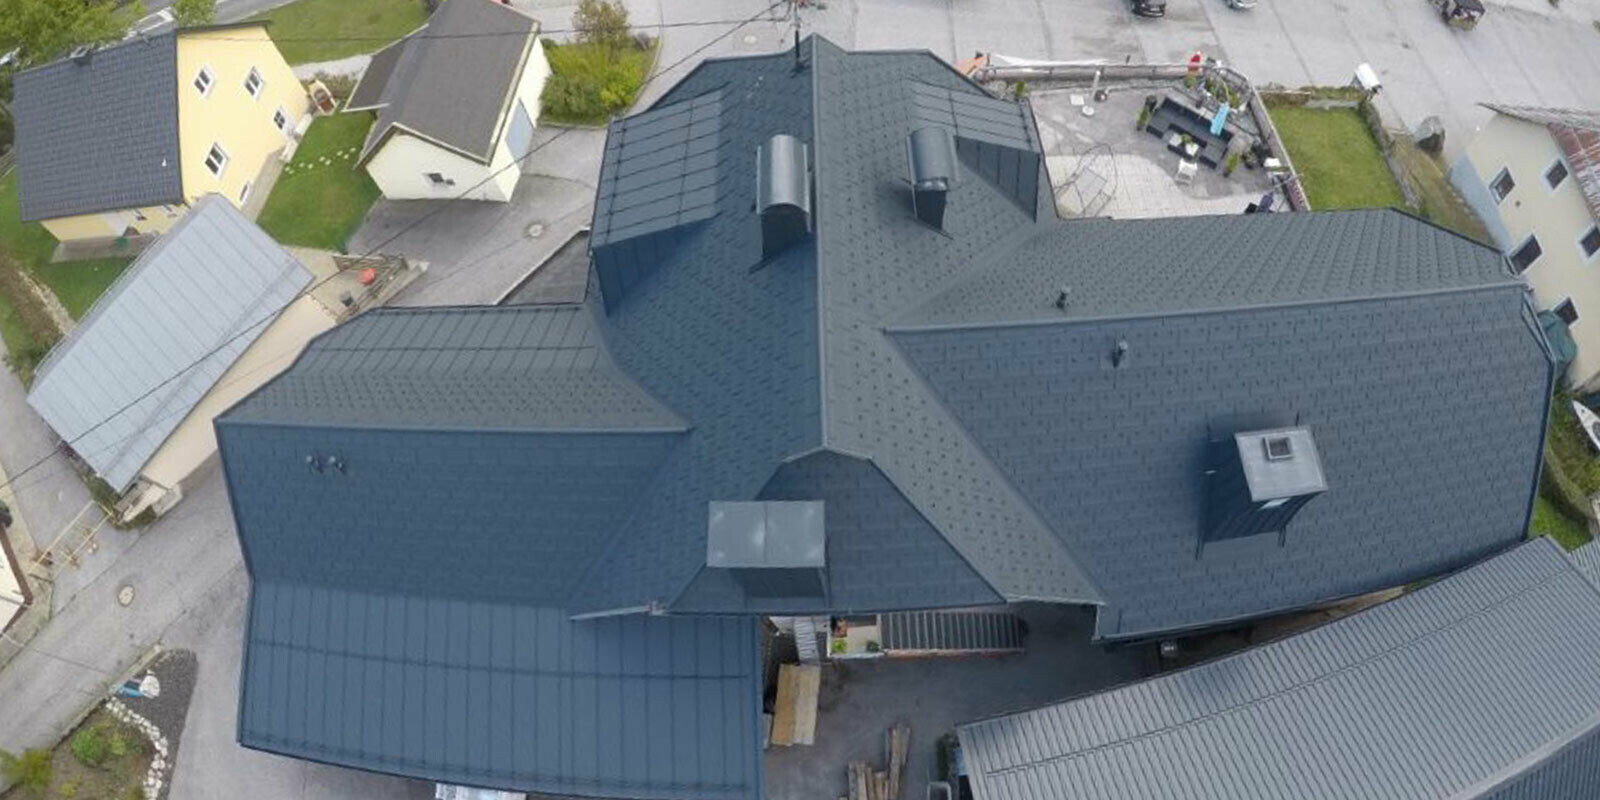 Rénovation d’une grande surface de toiture présentant de nombreux détails : noues, pignons et cheminées. Le toit est recouvert de tuiles R.16 en aluminium de PREFA, couleur anthracite.